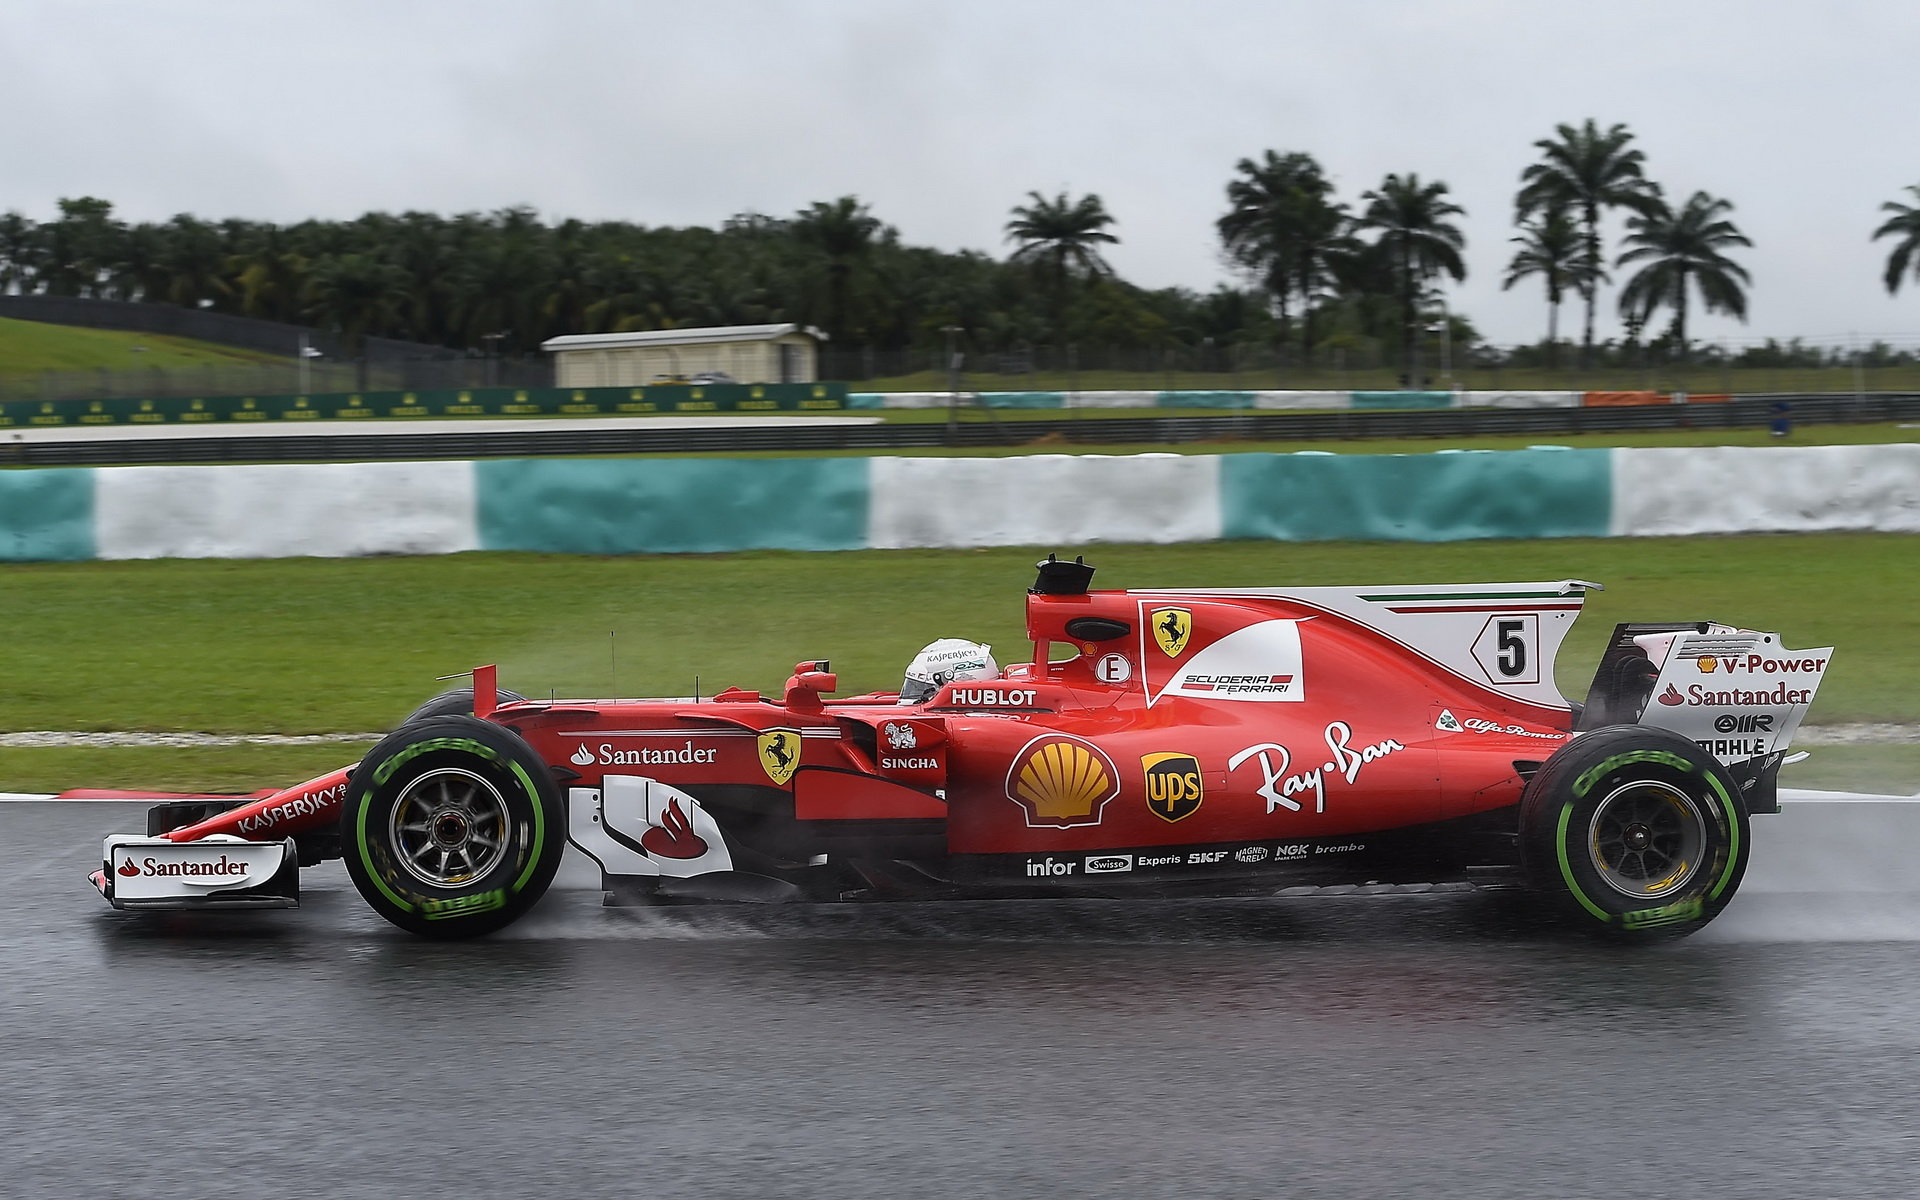 Brawn je ochoten s Ferrari jednat, každé partnerství má však své hranice